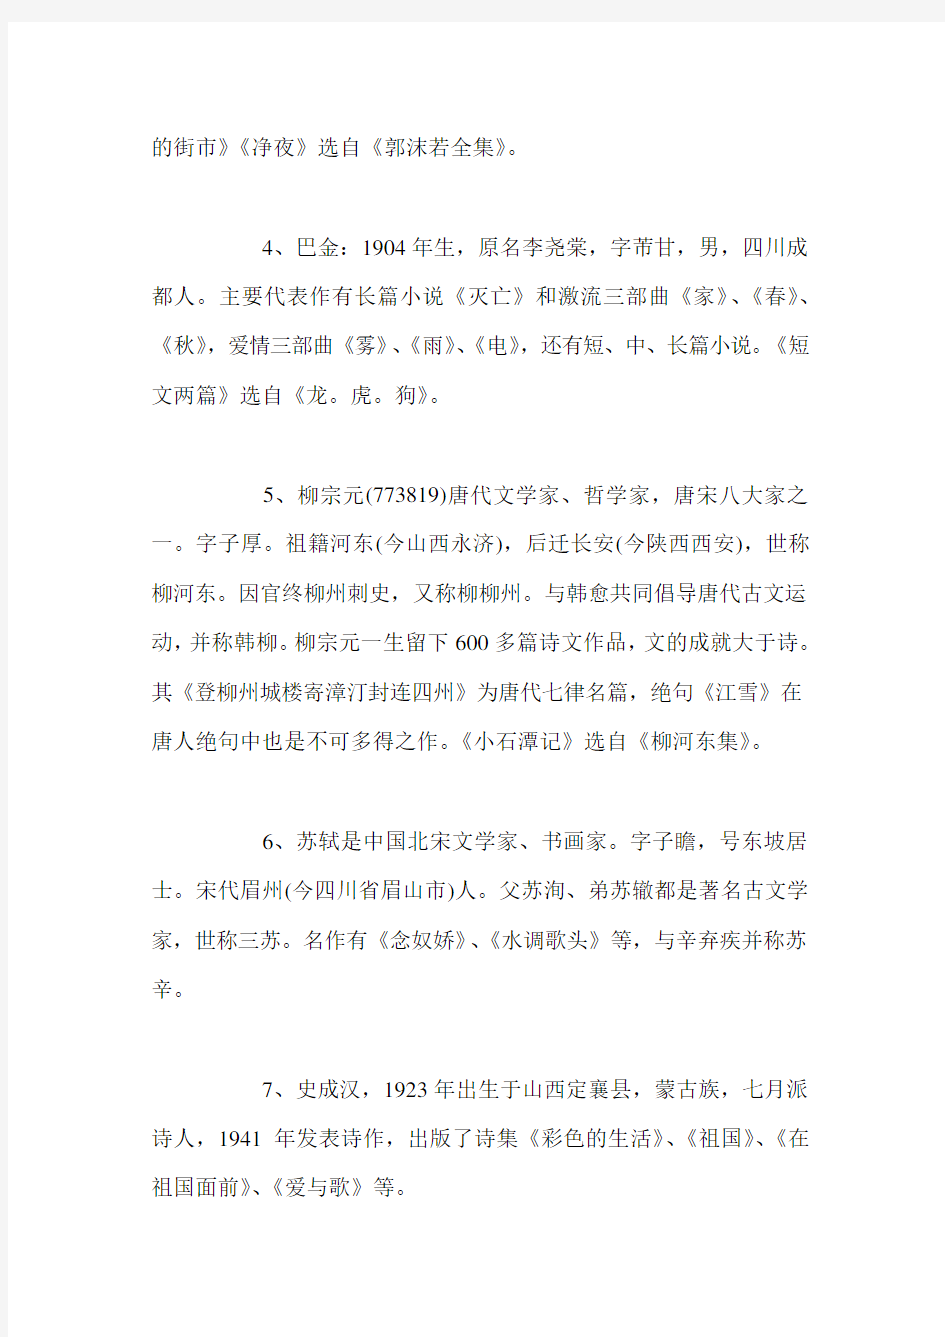 初中文学常识知识点：必备44条基础常识(1-10)